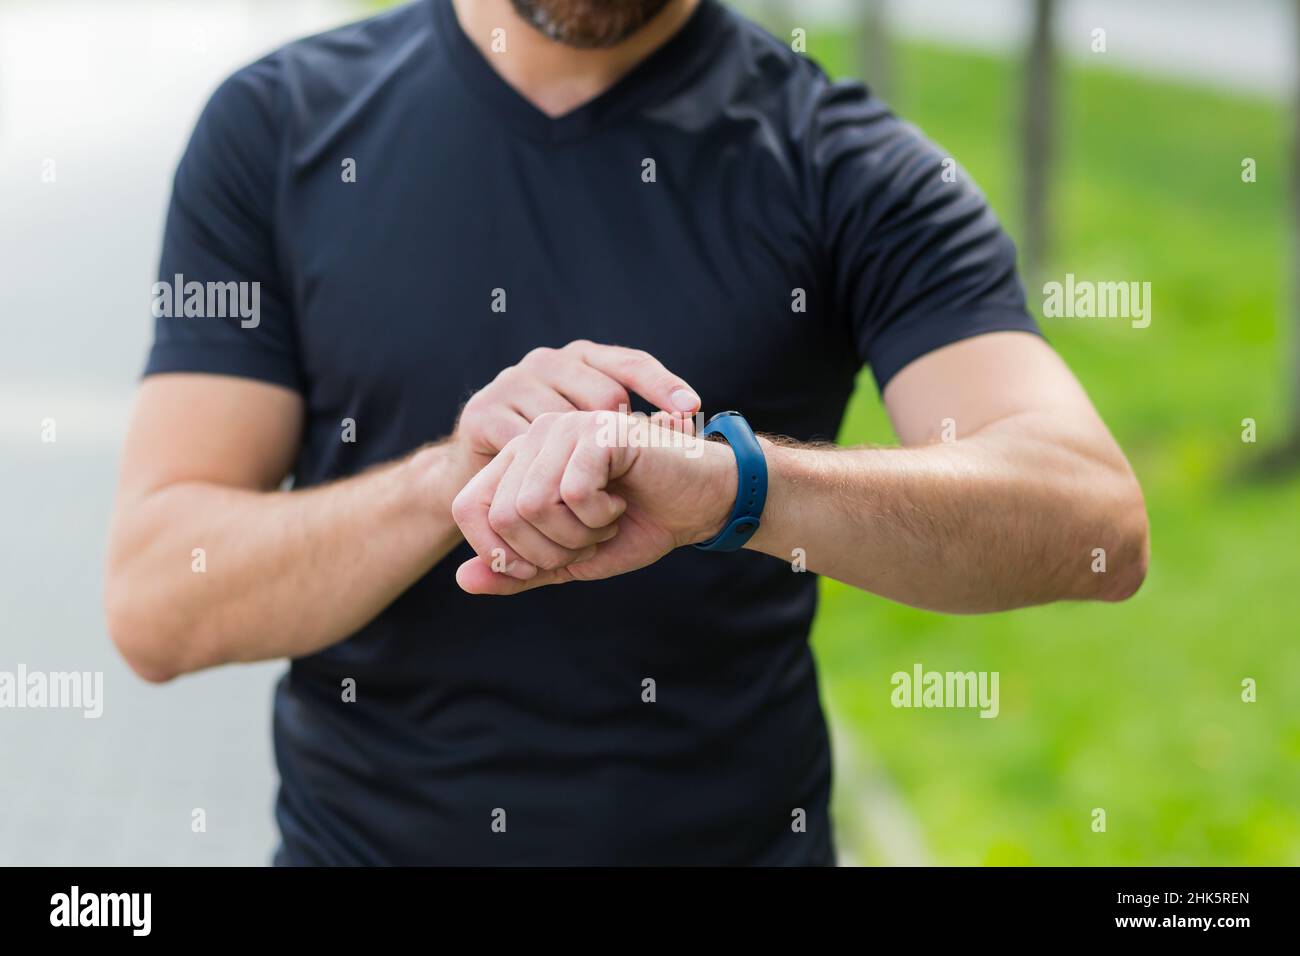 Nahaufnahme der Hände eines männlichen Athleten, der das Fitnessprogramm in der Smart Watch wechselt Stockfoto